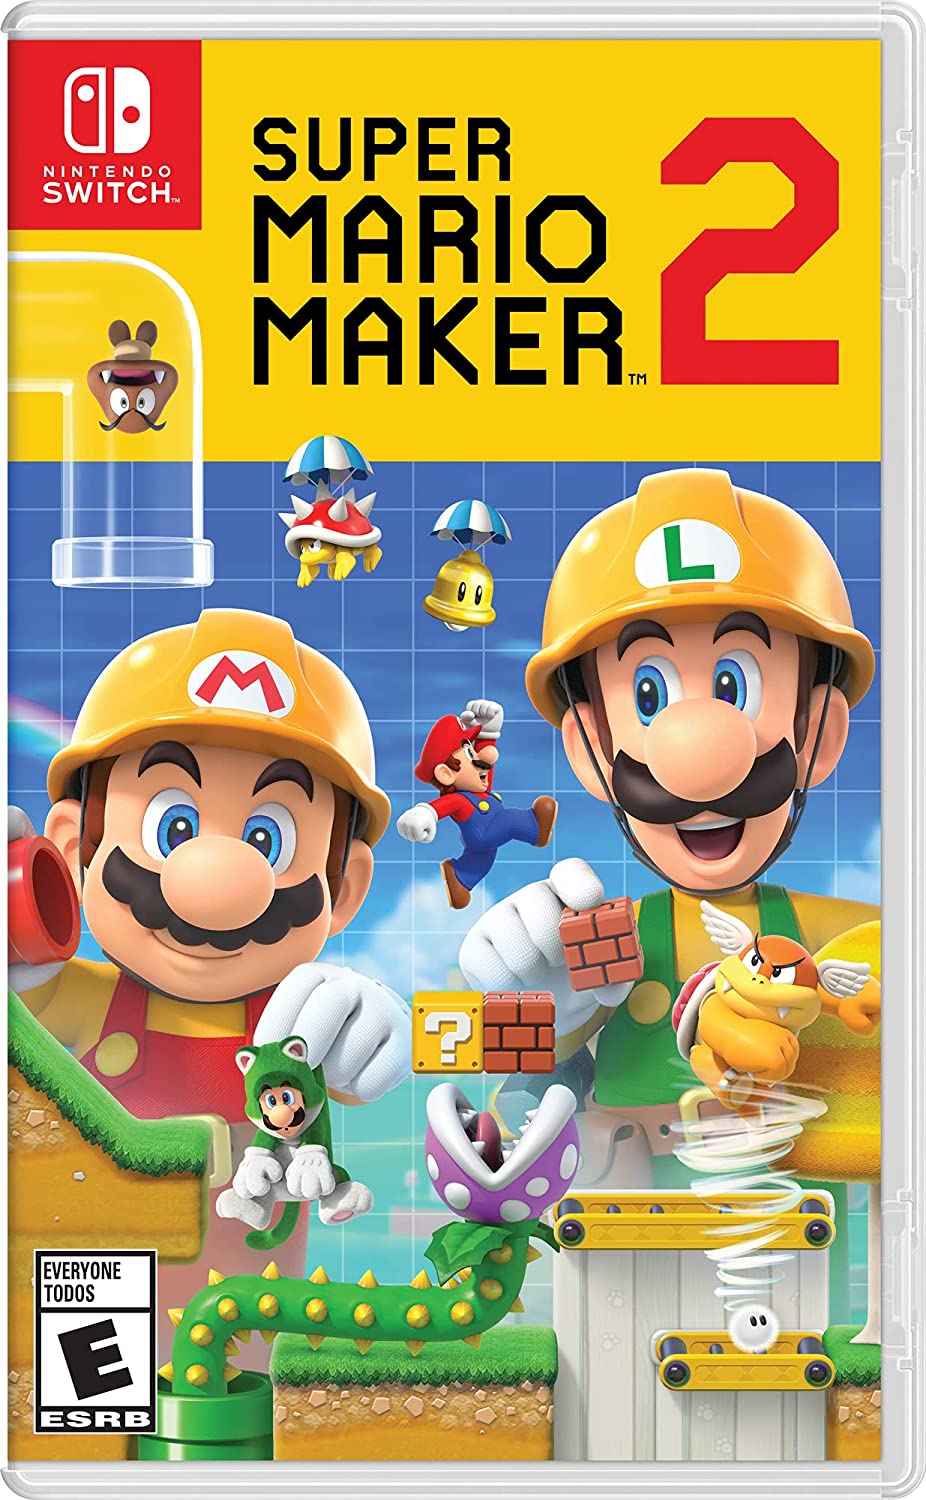 Super Mario Maker 2 for Nintendo Switch artwork.